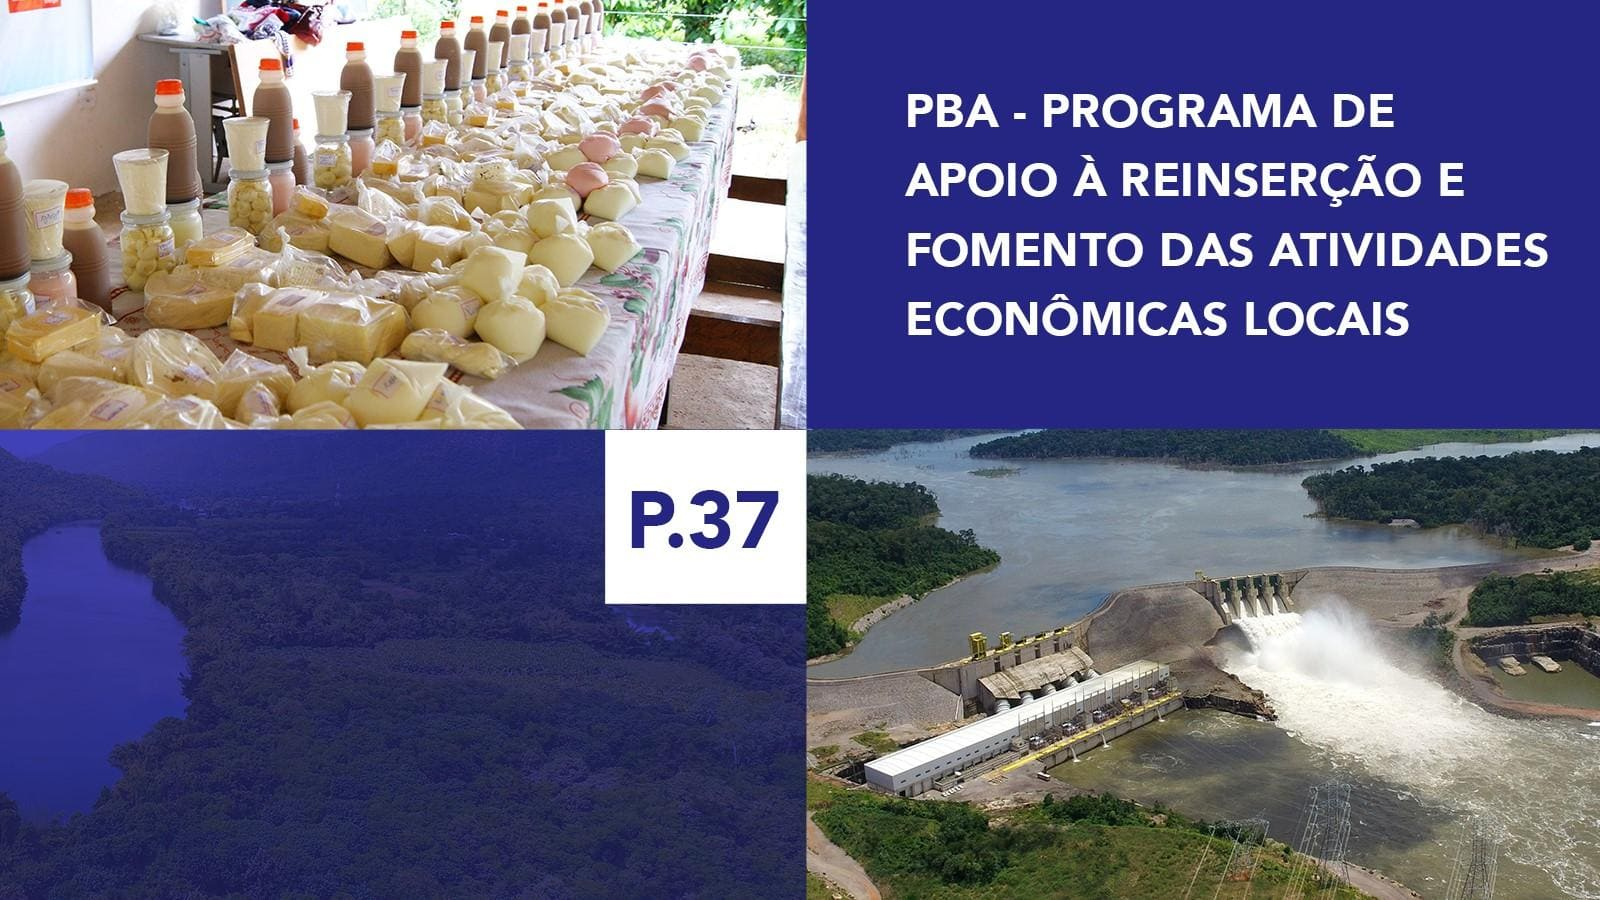 P.37 - Programa de Apoio à Reinserção e Fomento das Atividades Econômicas Locais